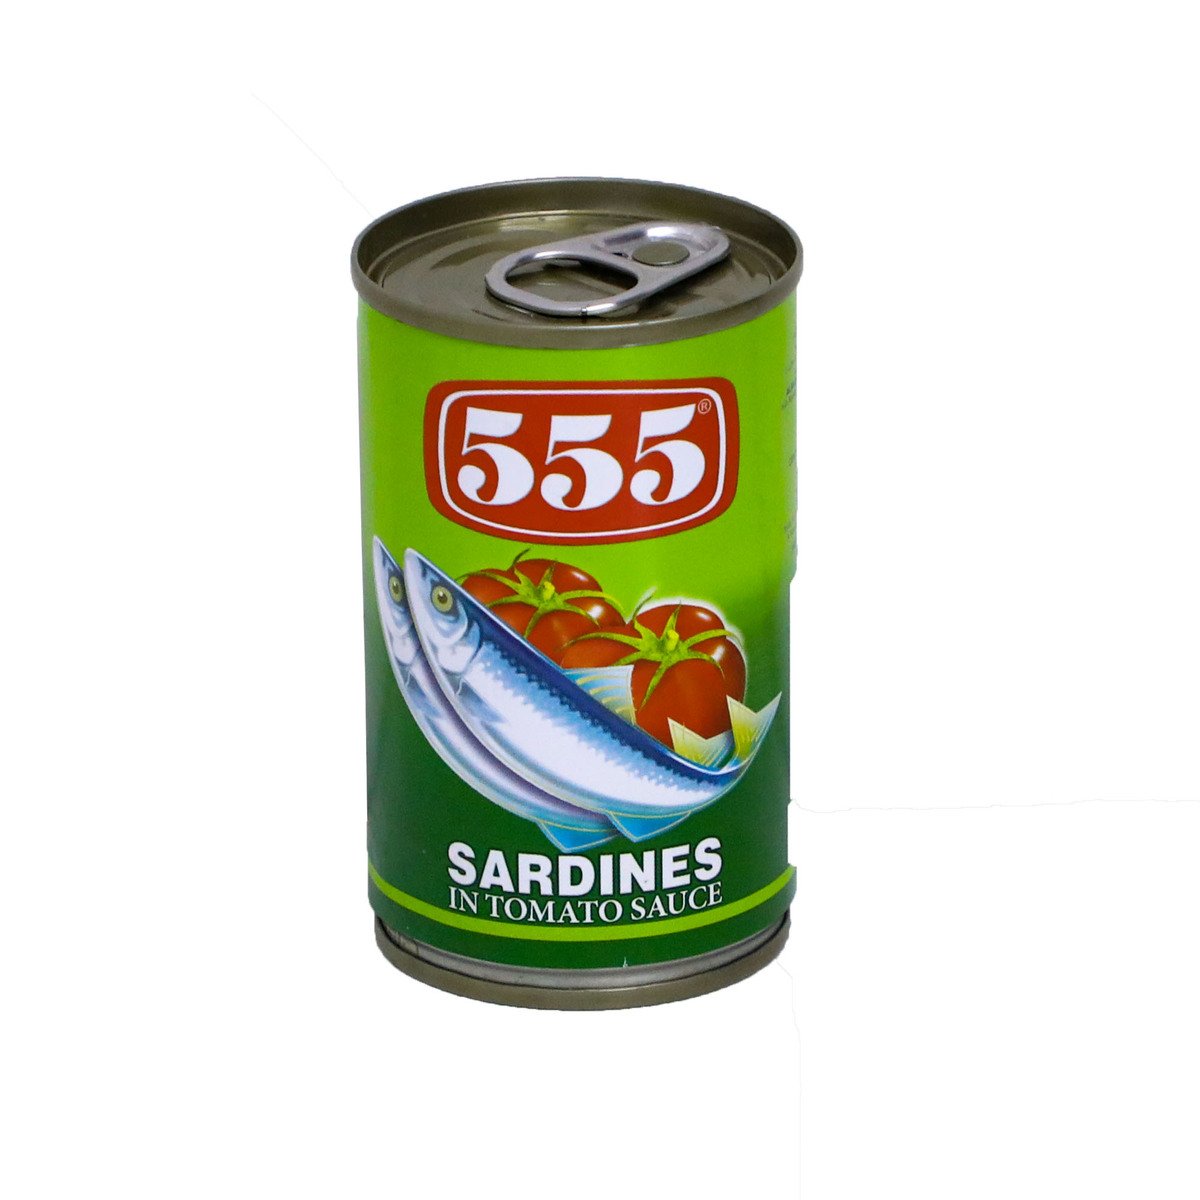 اشتري قم بشراء 555 سردين بصلصة الطماطم 155 جم Online at Best Price من الموقع - من لولو هايبر ماركت Canned Sardines في الامارات